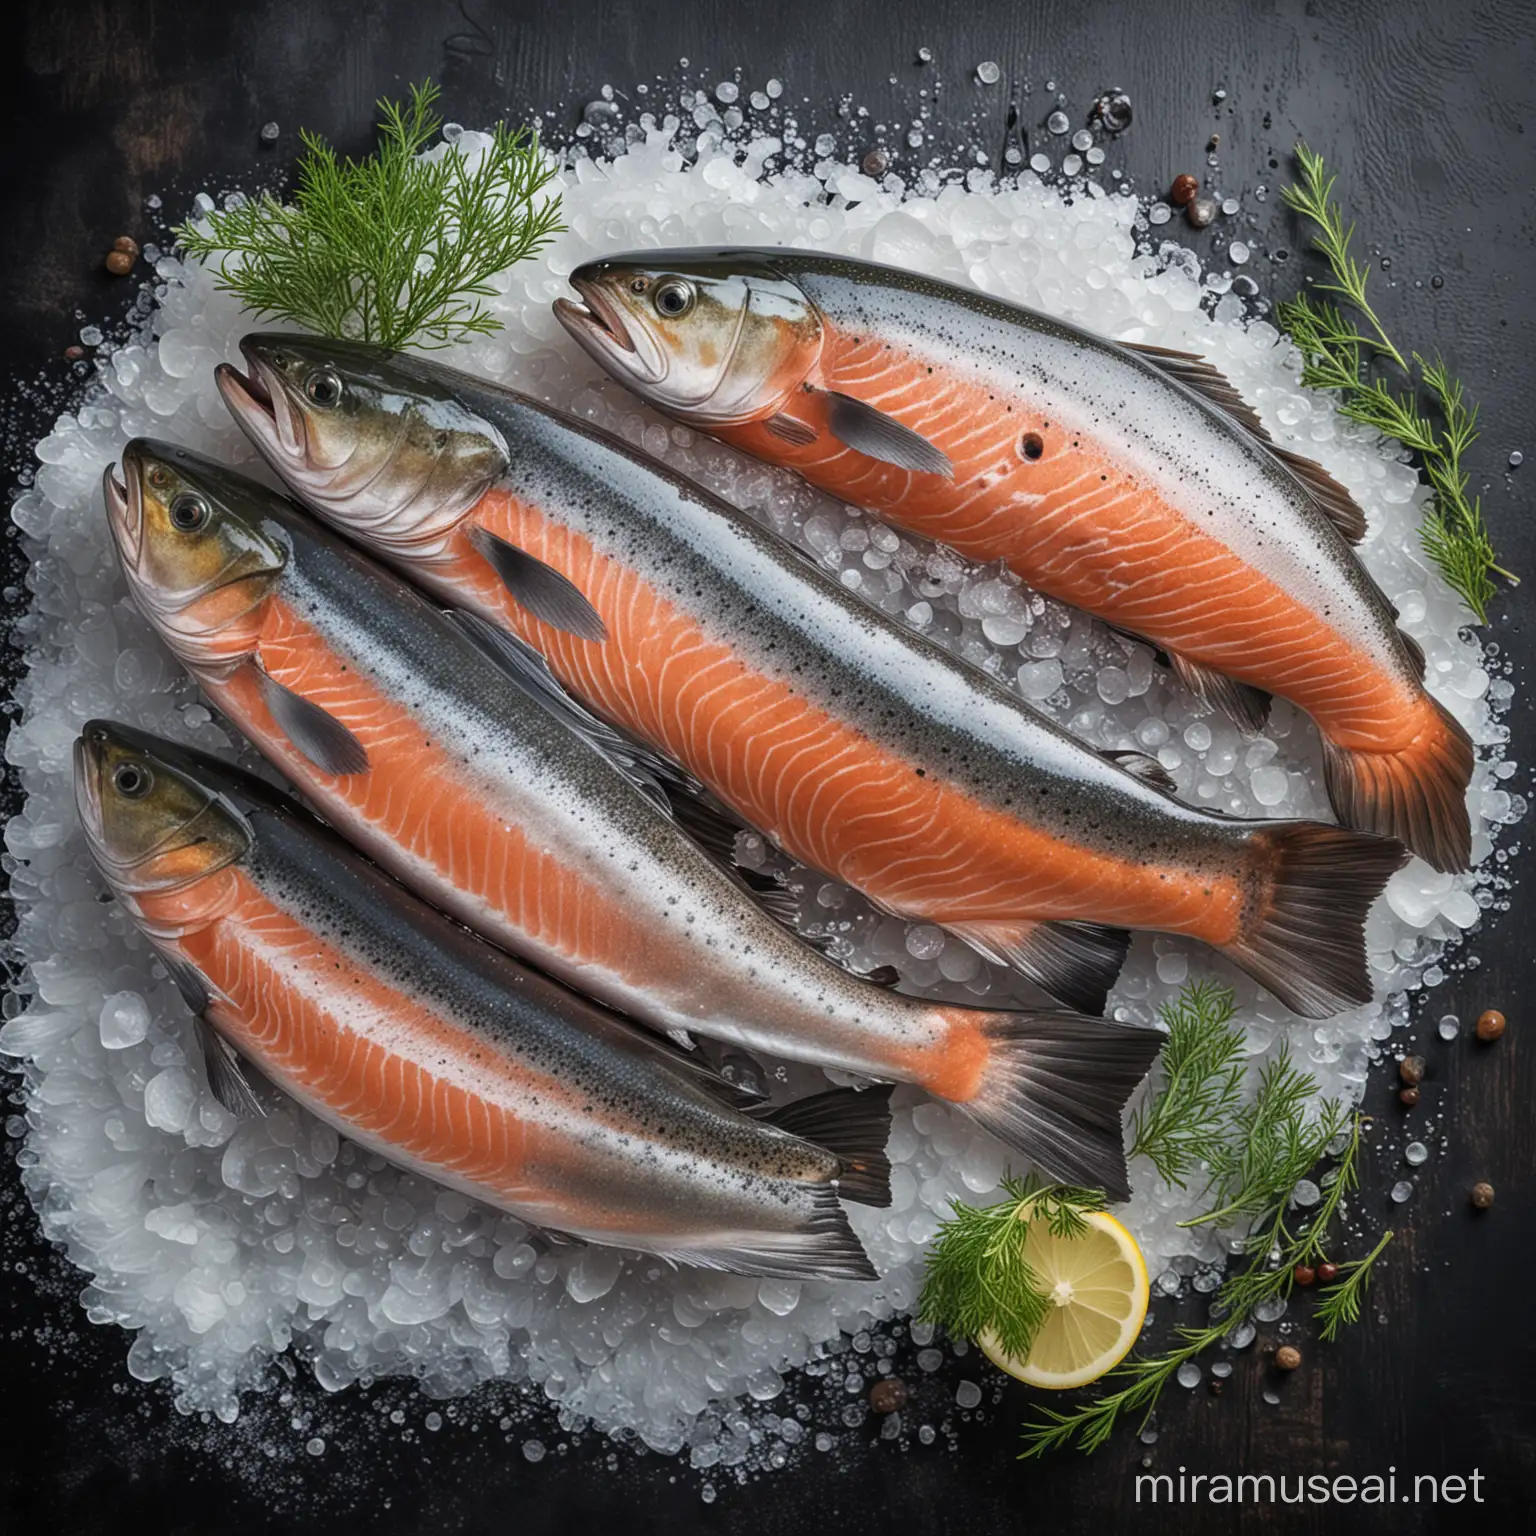 beautiful image of salmon fish